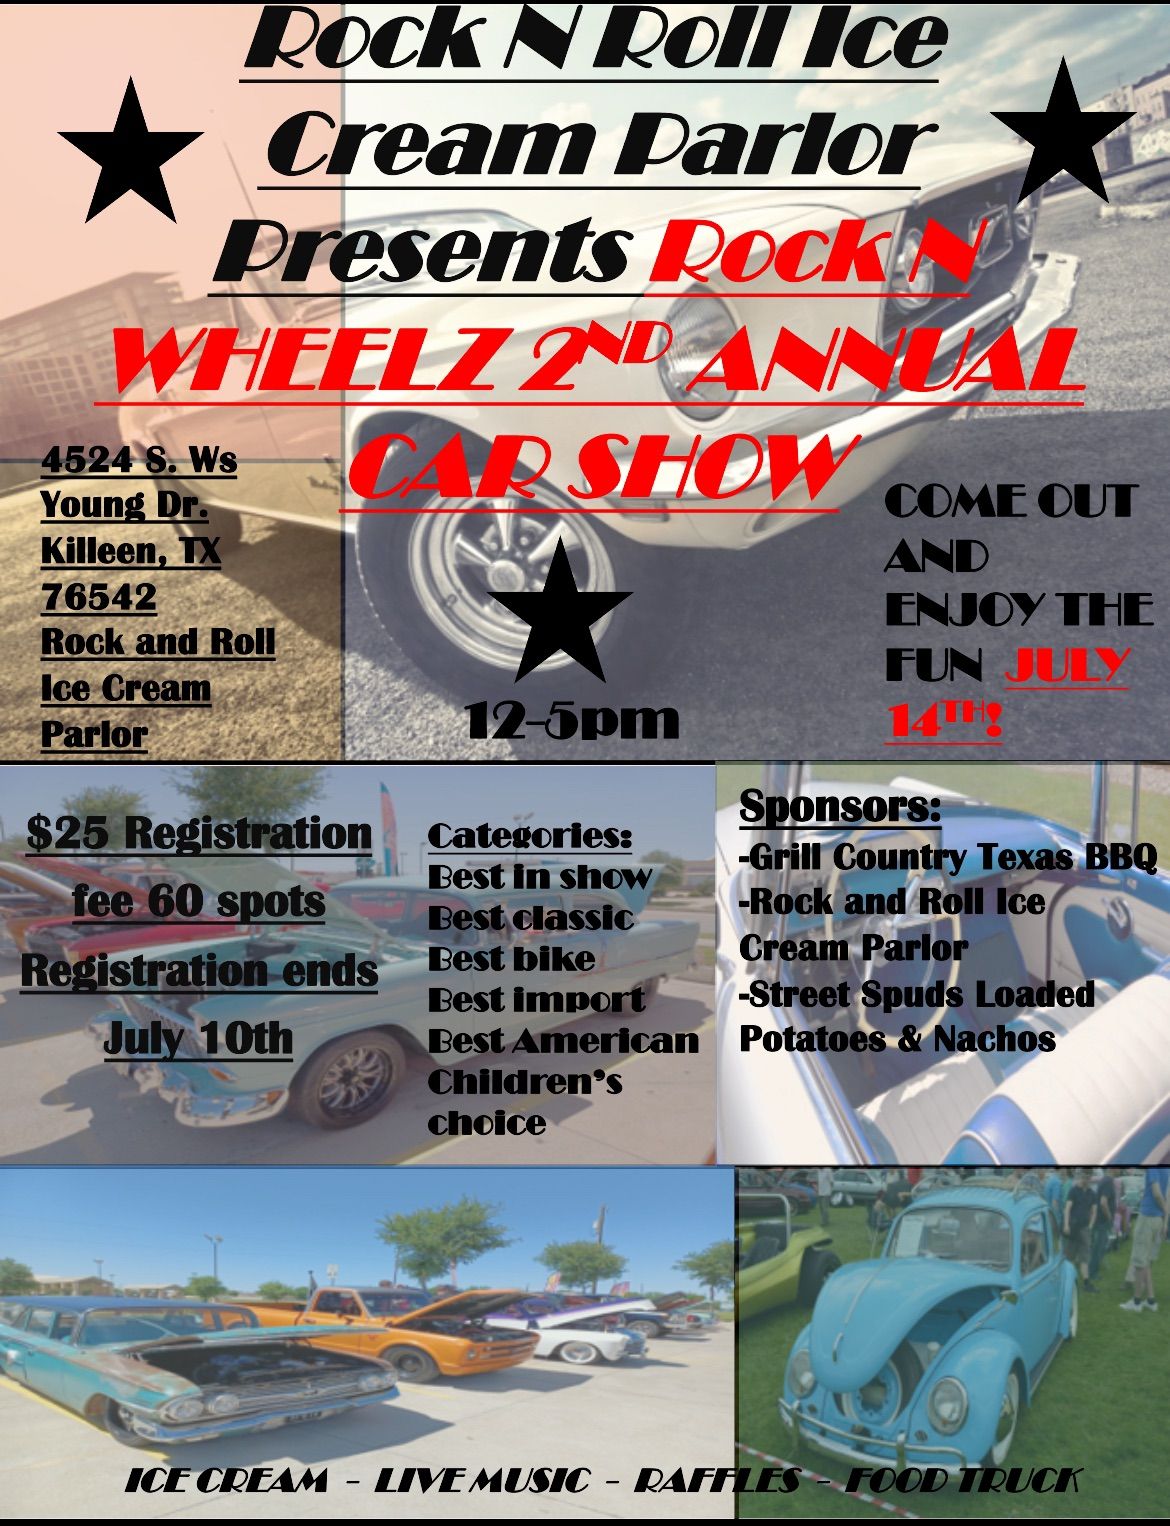 Rock N Wheelz 2nd annual car show